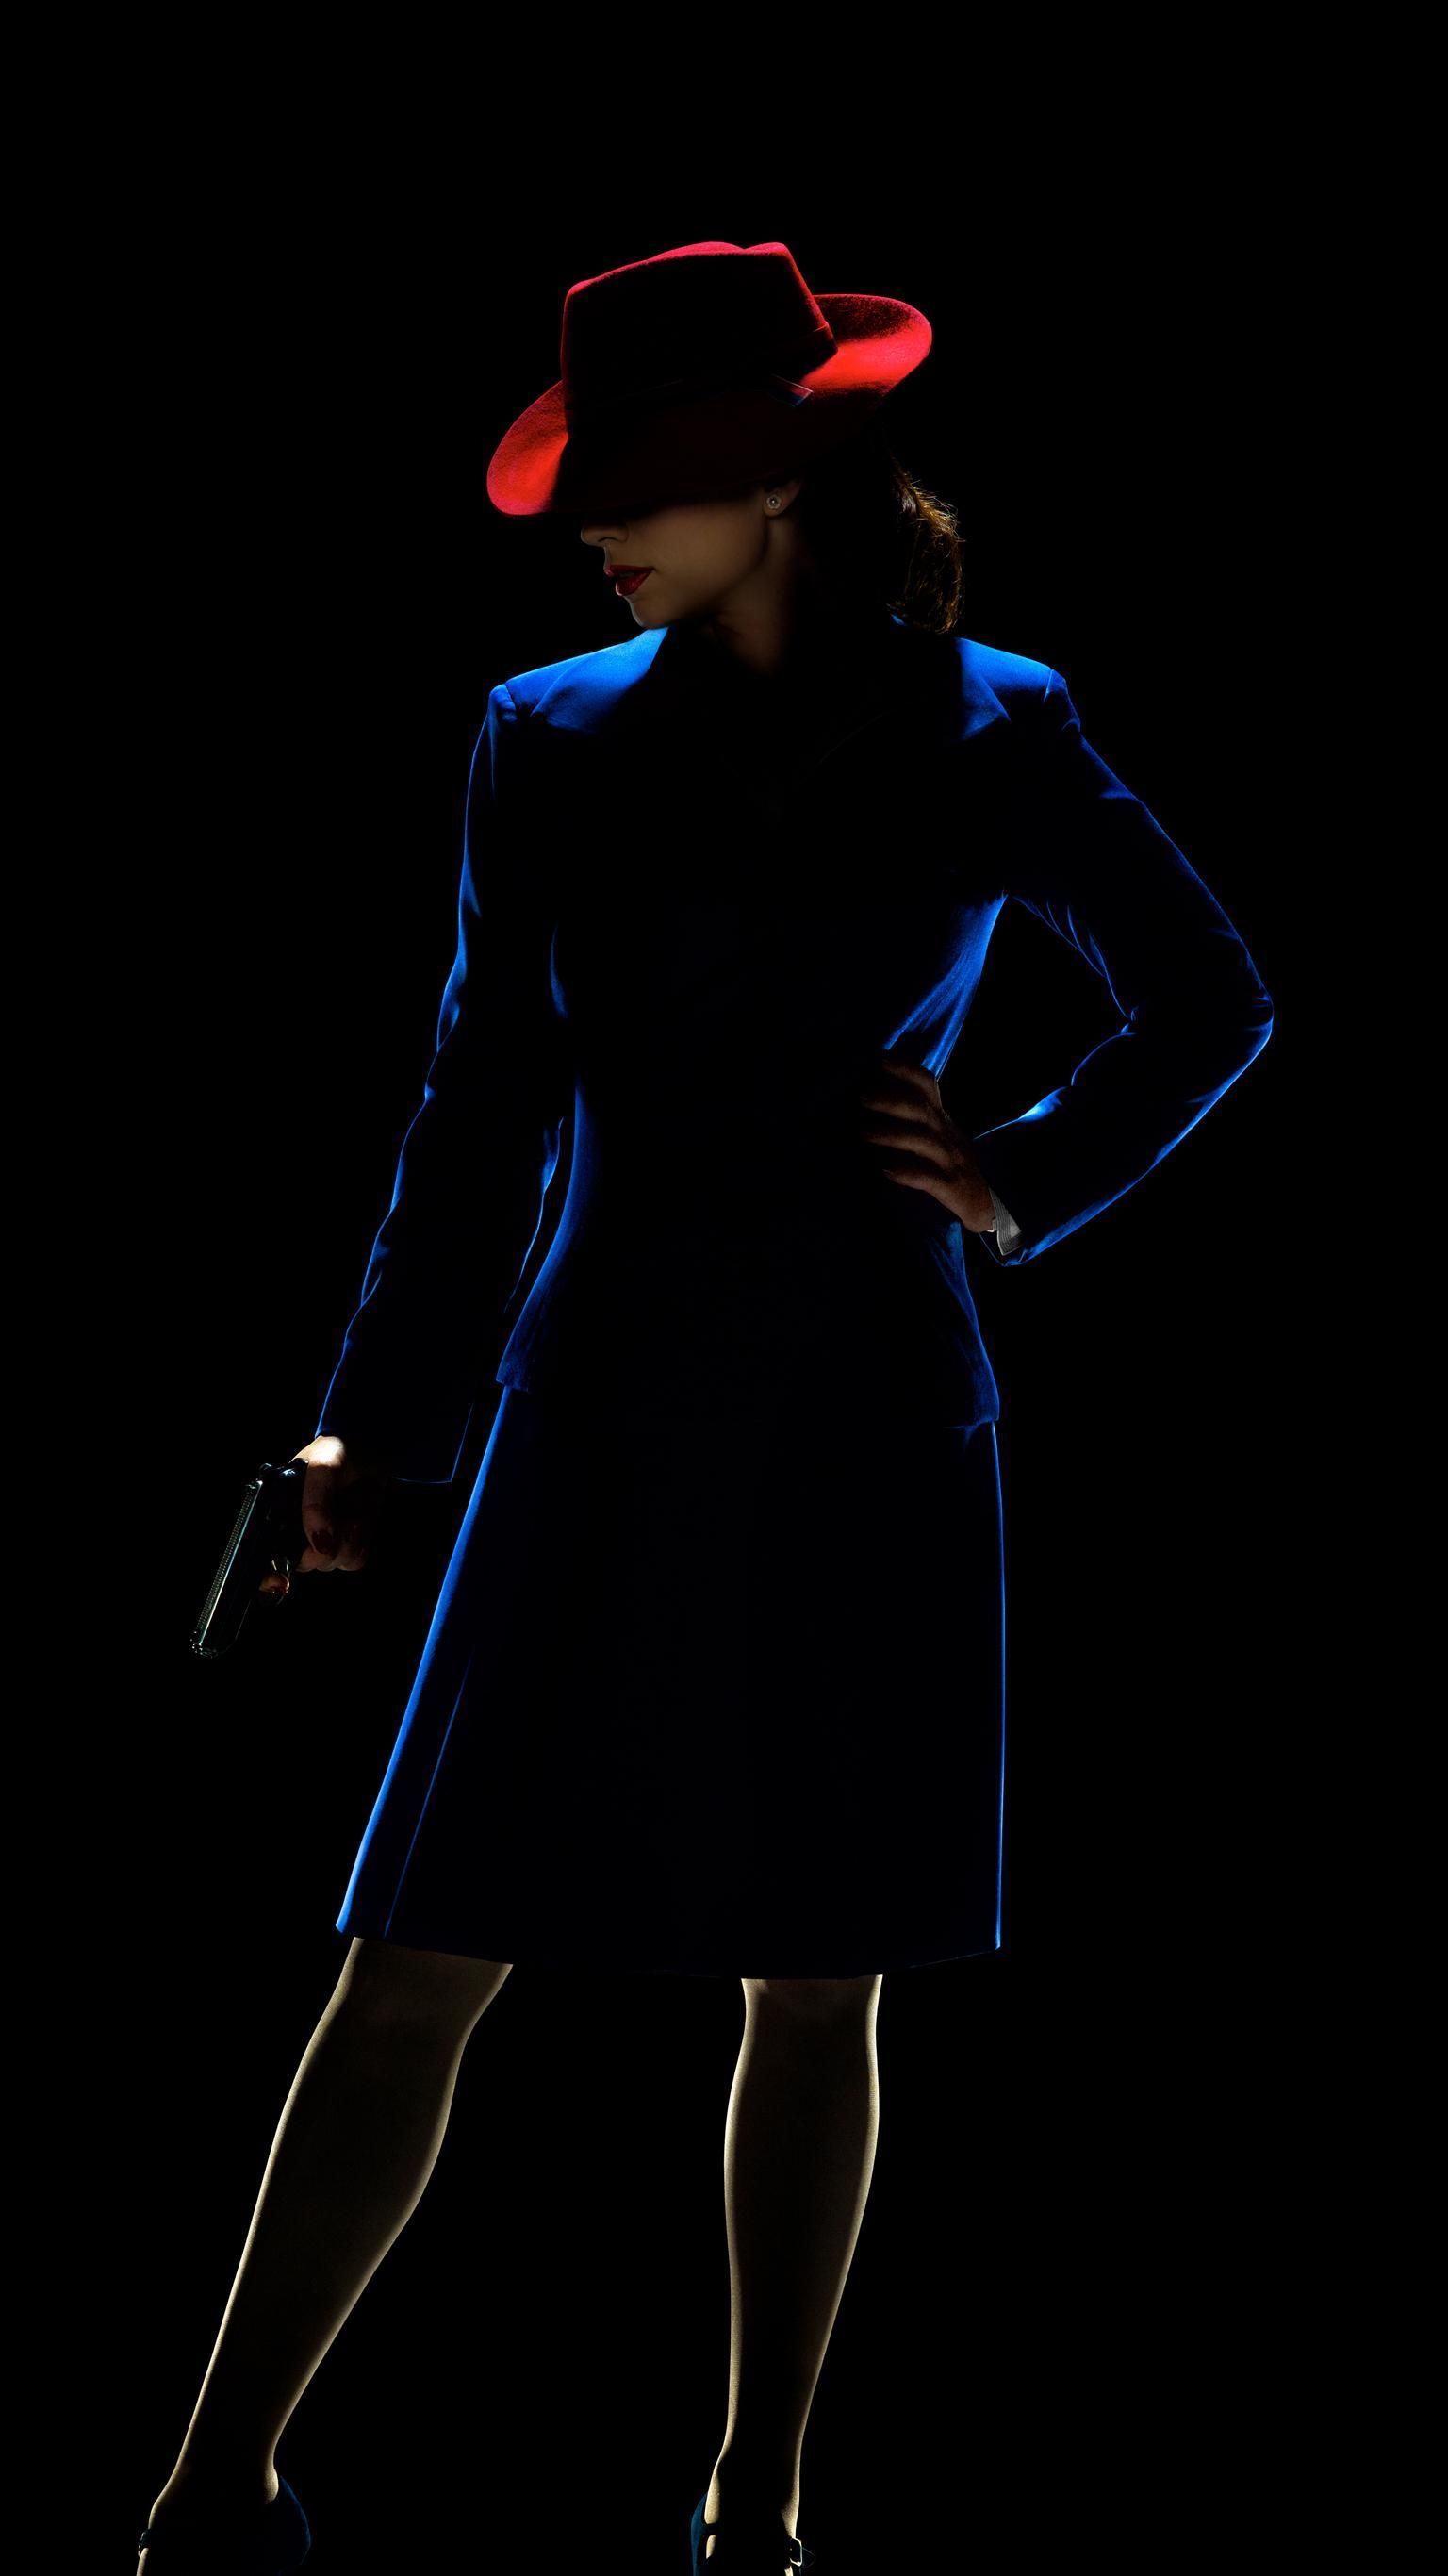 Marvel's Agent Carter Phone Wallpaper. Moviemania. Agent carter, Marvel characters, Marvel girls